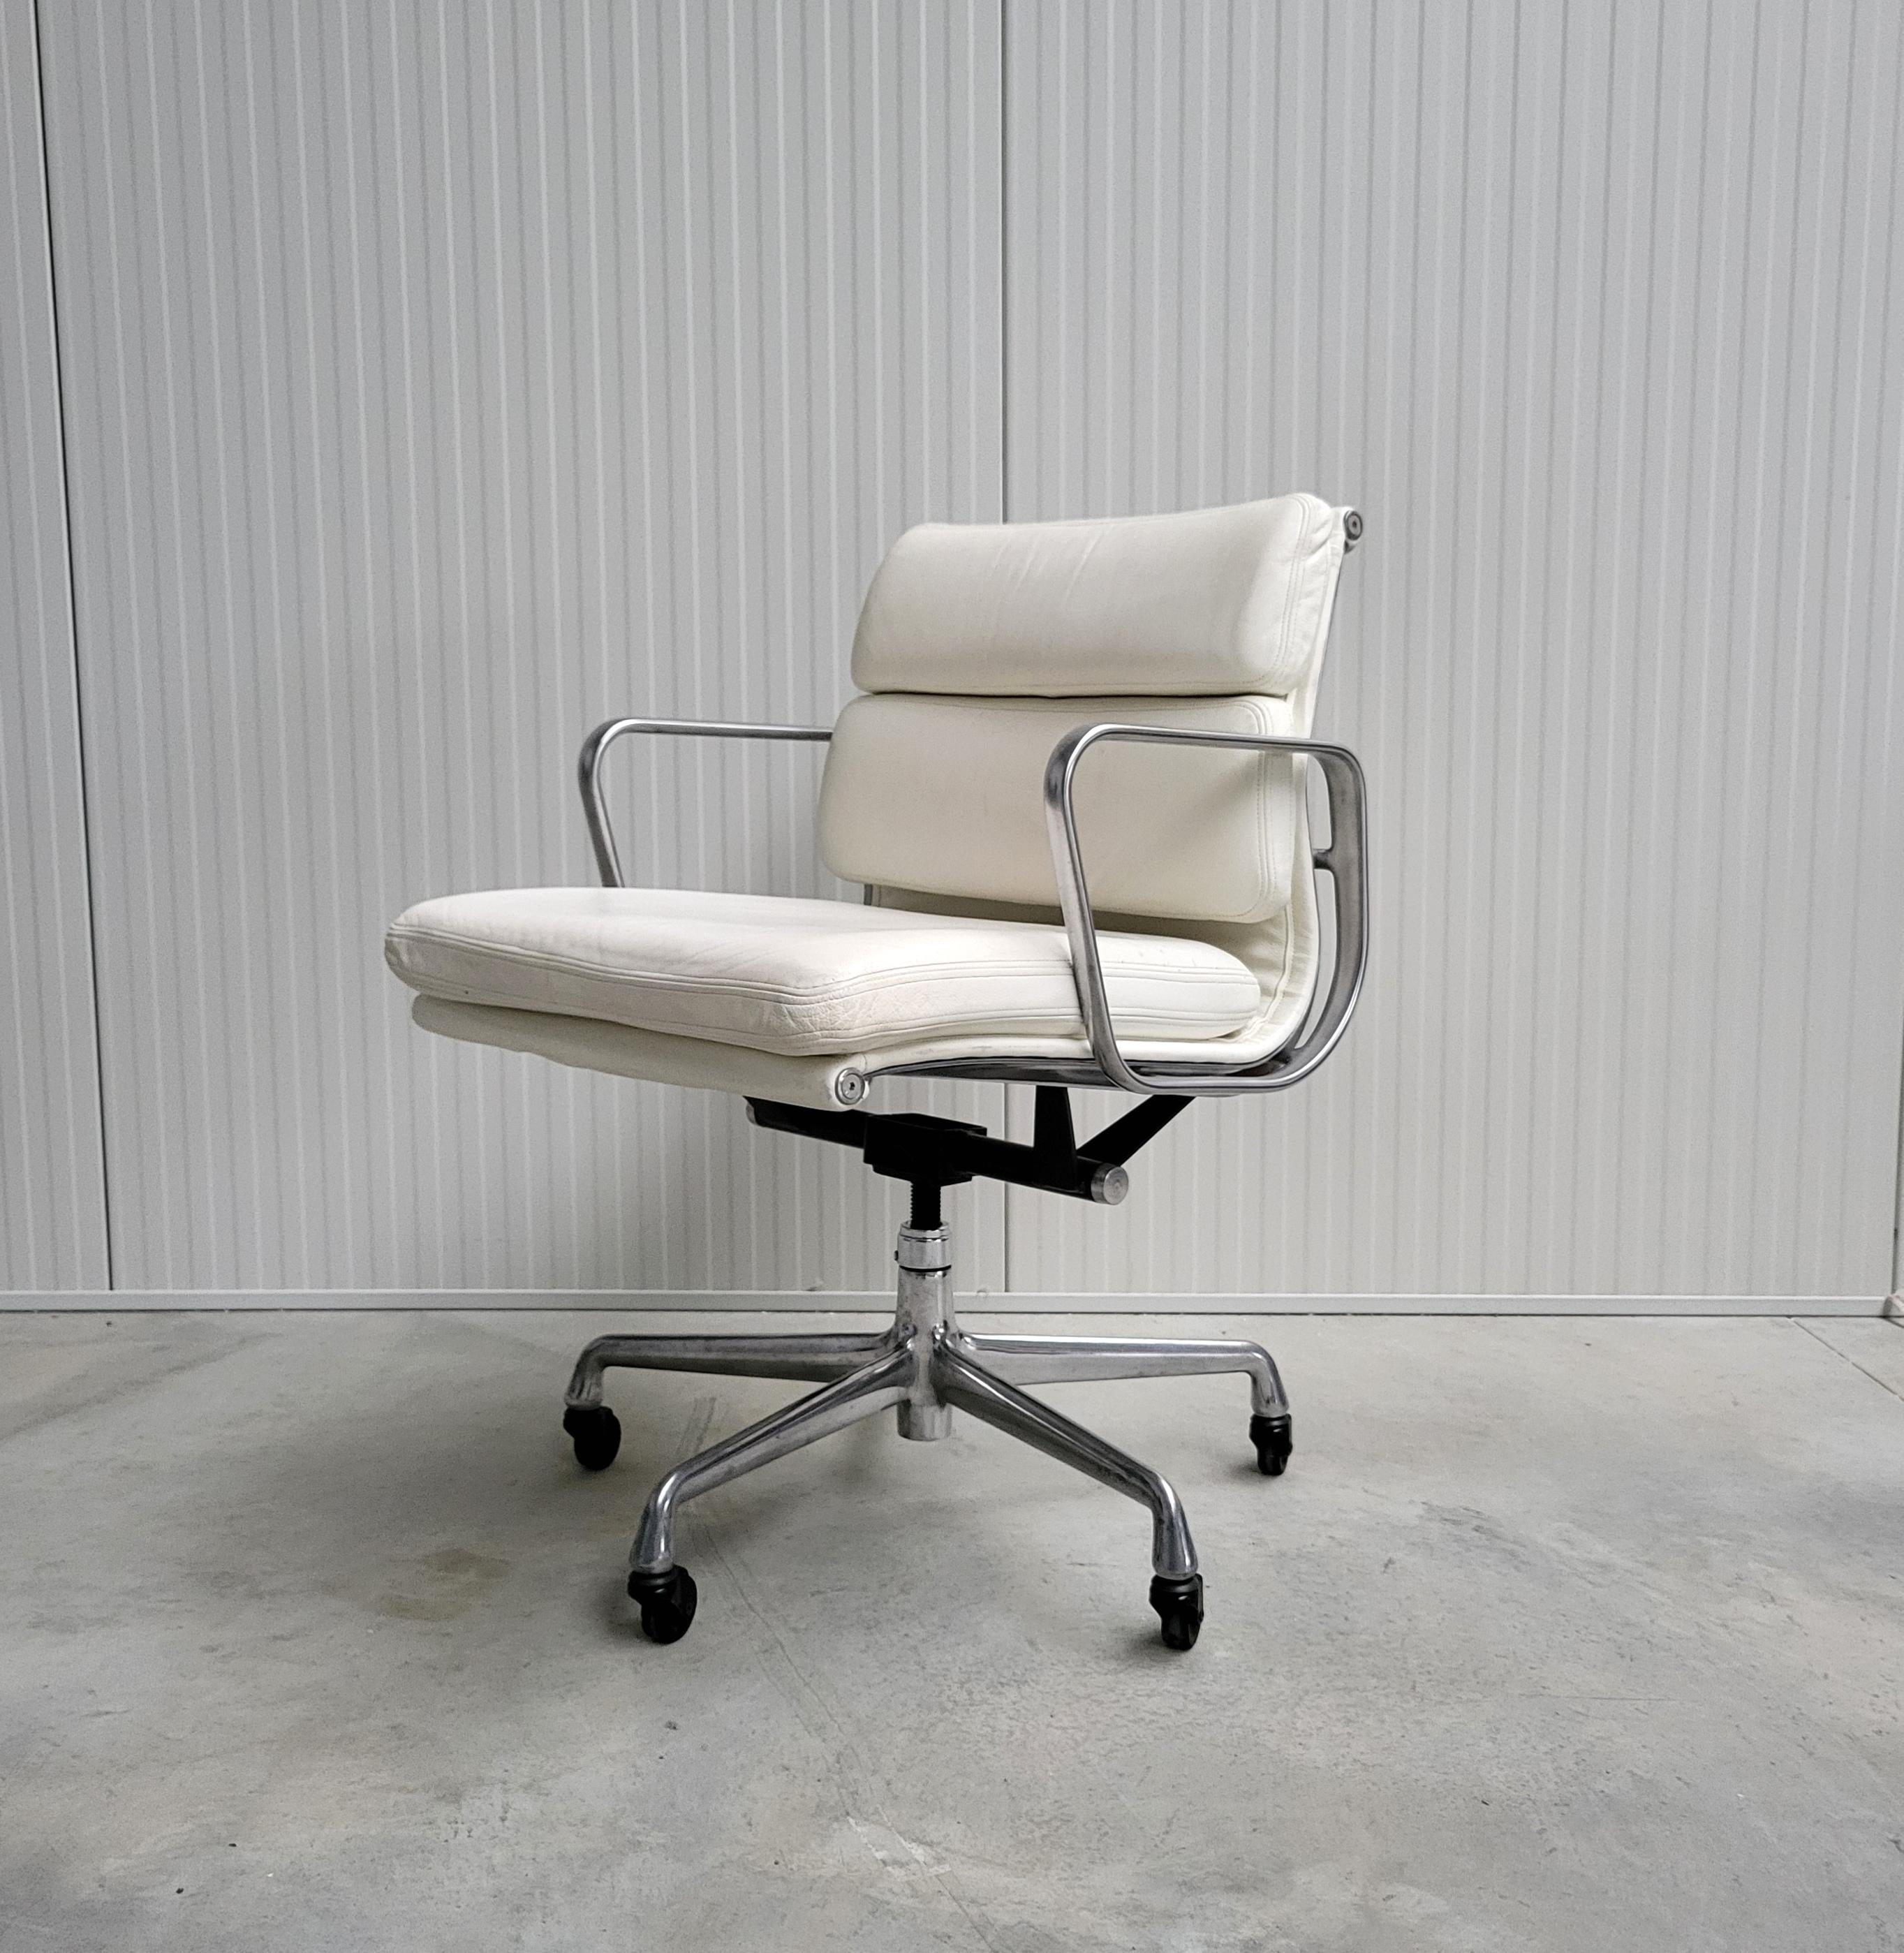 Sehr schöner Soft Pad Bürostuhl Modell EA335 von Herman Miller. 
Der Stuhl hat einen polierten Aluminiumrahmen und wurde in den frühen 2000er Jahren hergestellt.

Der Stuhl ist höhenverstellbar und hat einen Kippmechanismus.

Er hat einen